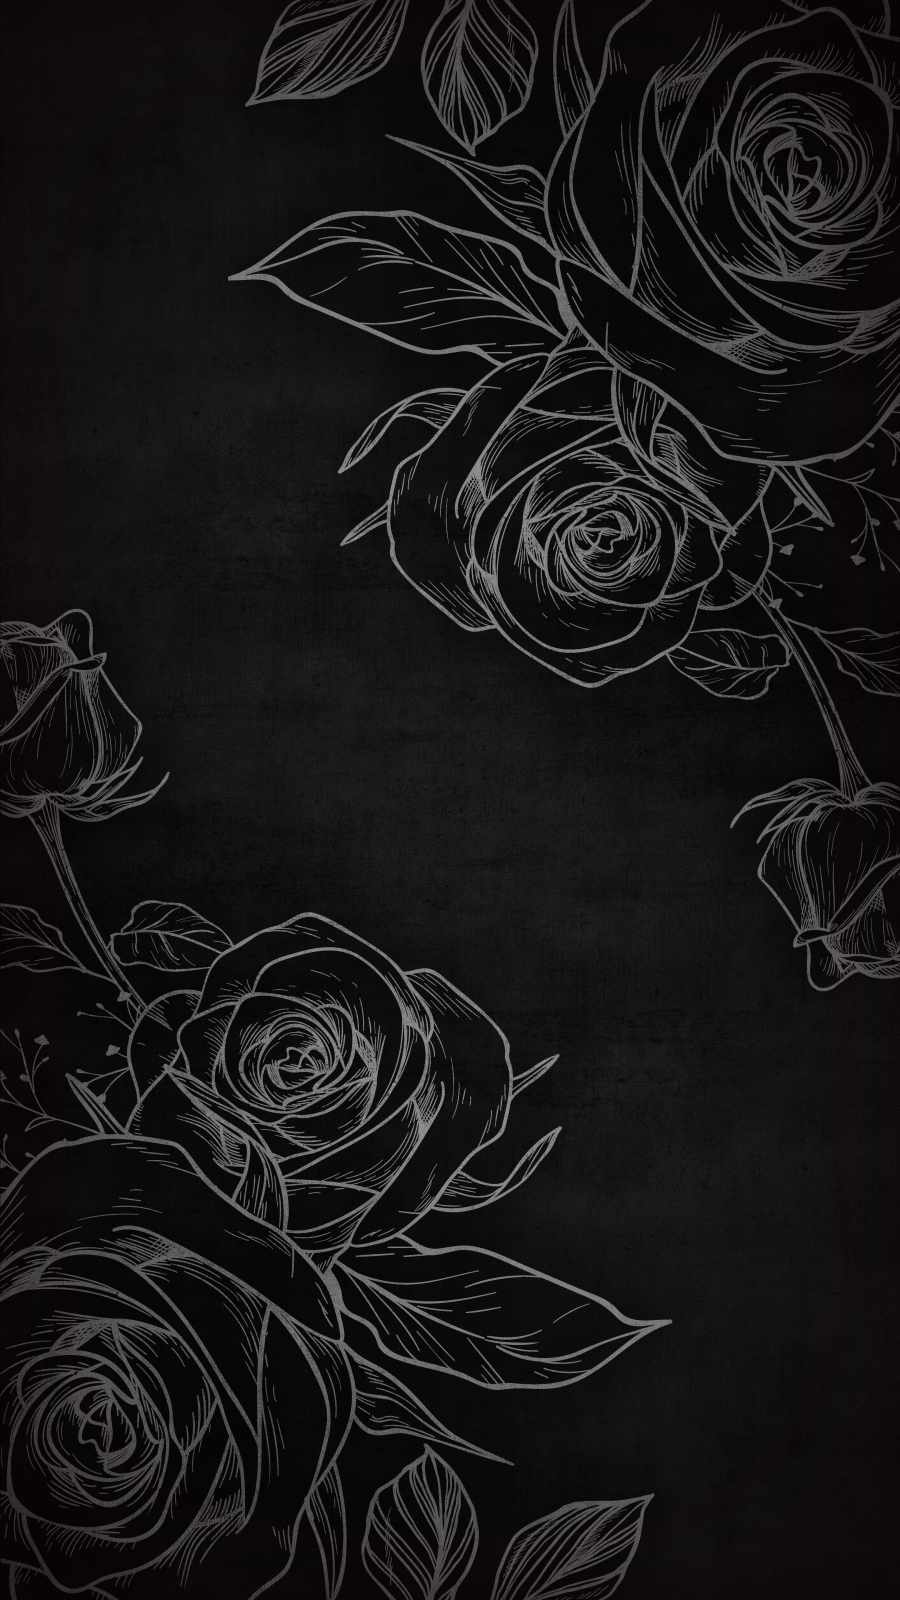 Unalavagna Nera Con Delle Rose Disegnate Su Di Essa